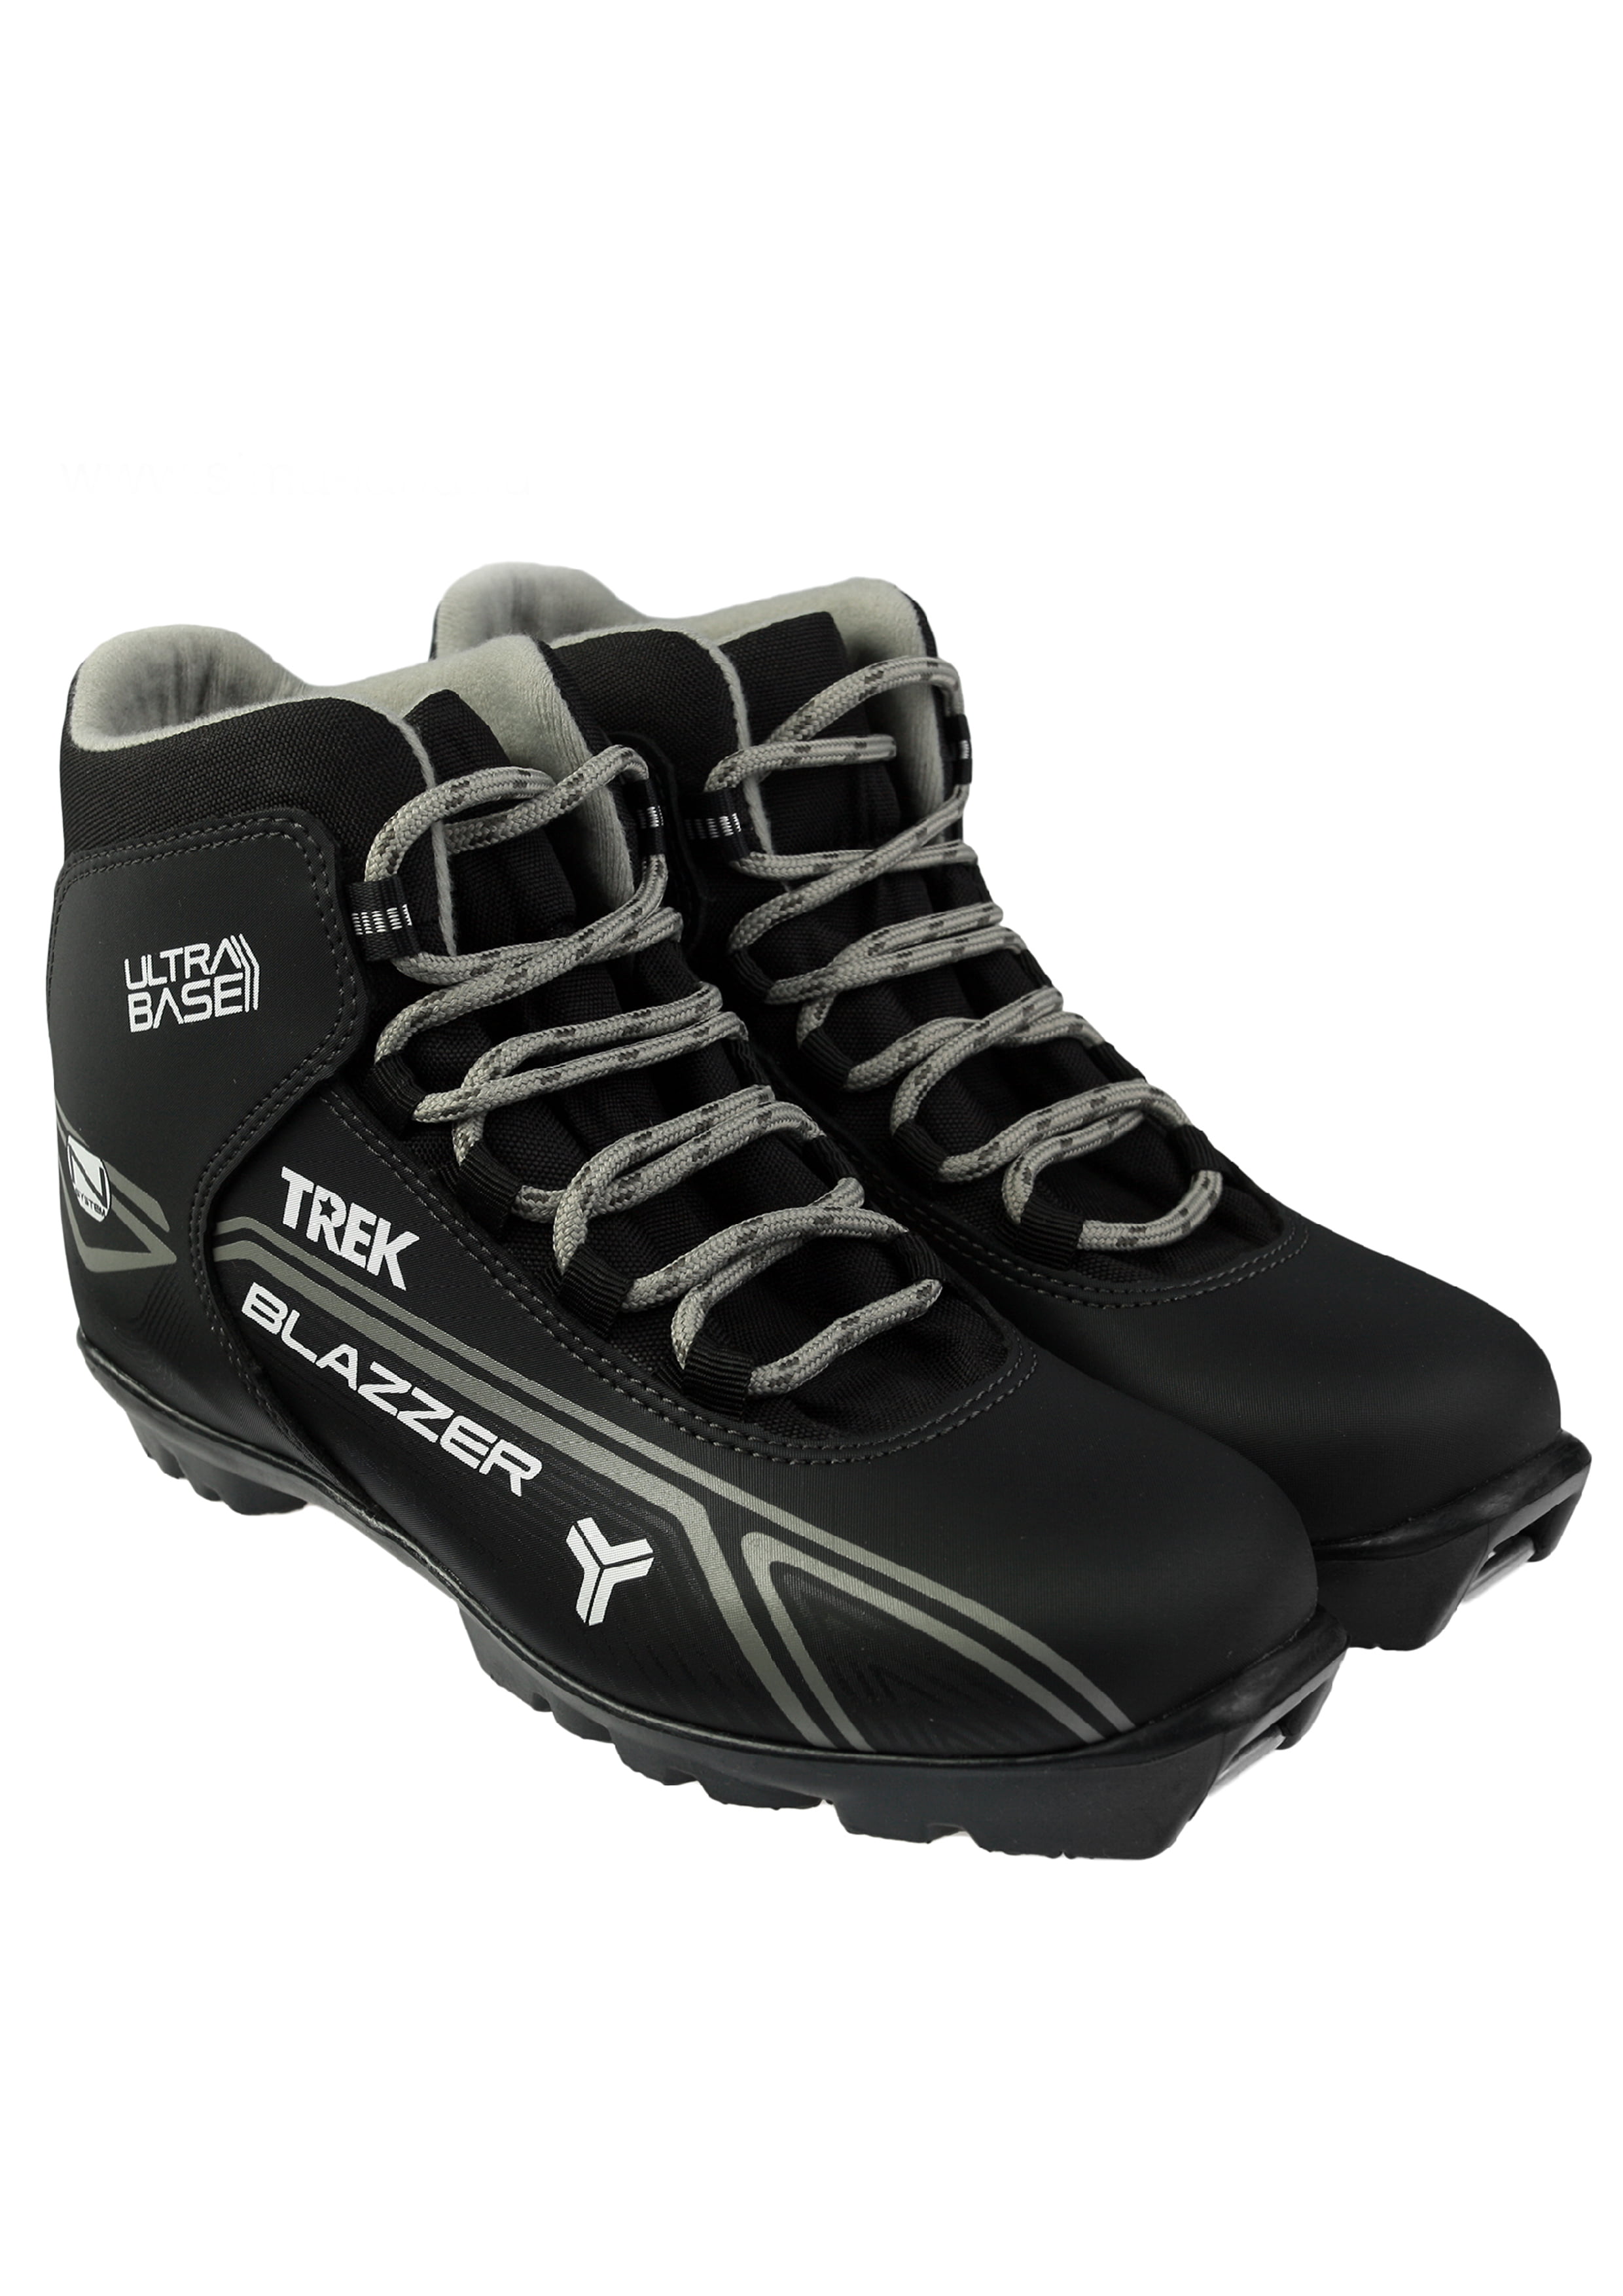 Ботинки лыжные NNN TREK Blazzer4 черный